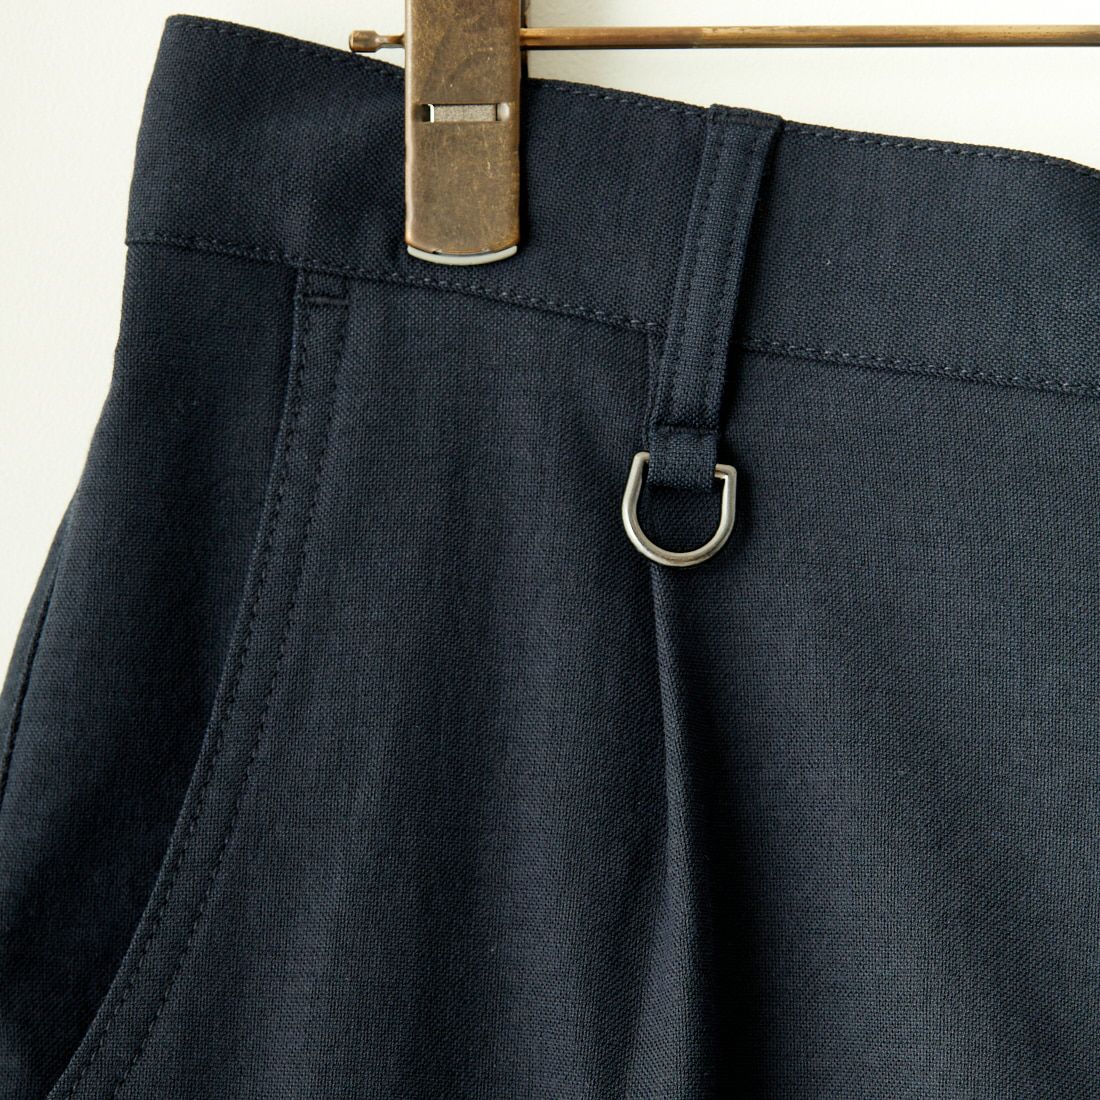 Jeans Factory Clothes [ジーンズファクトリークローズ] シェルタリング ドライオックス1Pイージートラウザー [JFC-241-006] 02 NVY